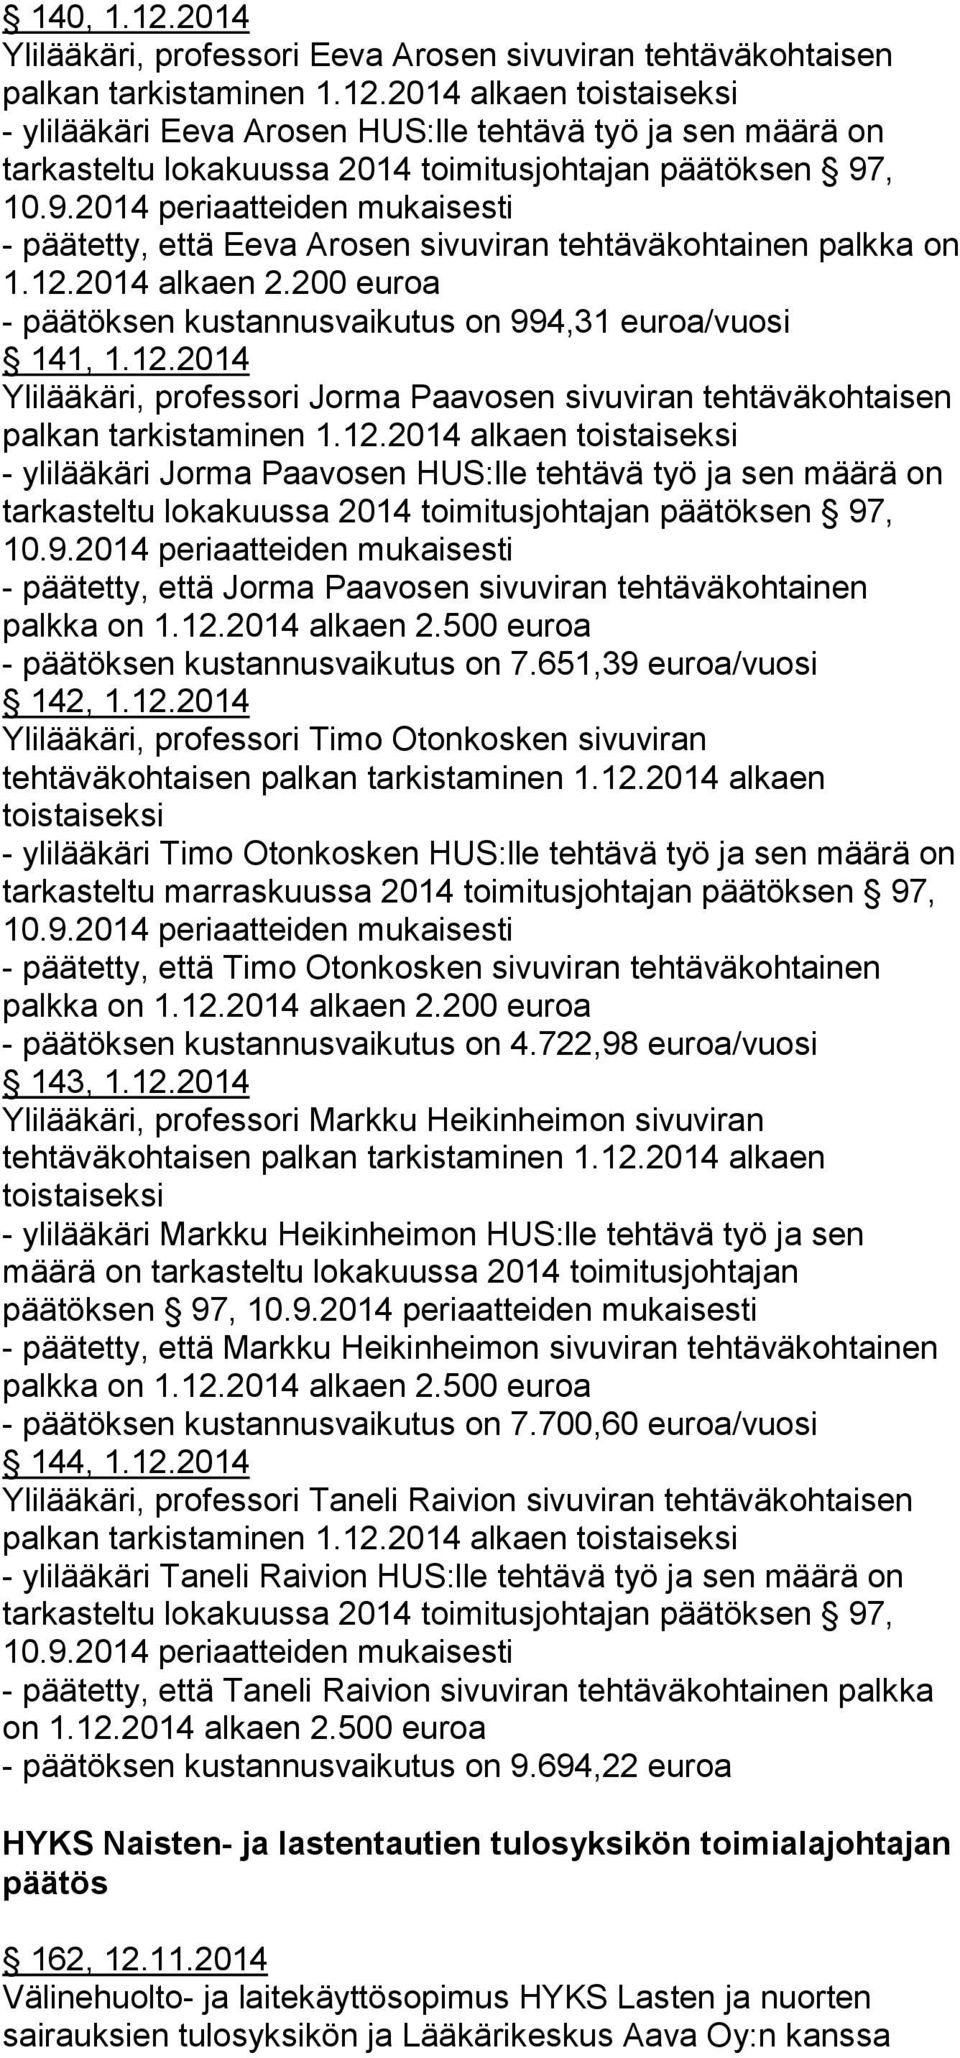 12.2014 alkaen 2.500 euroa - päätöksen kustannusvaikutus on 7.651,39 euroa/vuosi 142, 1.12.2014 Ylilääkäri, professori Timo Otonkosken sivuviran tehtäväkohtaisen palkan tarkistaminen 1.12.2014 alkaen